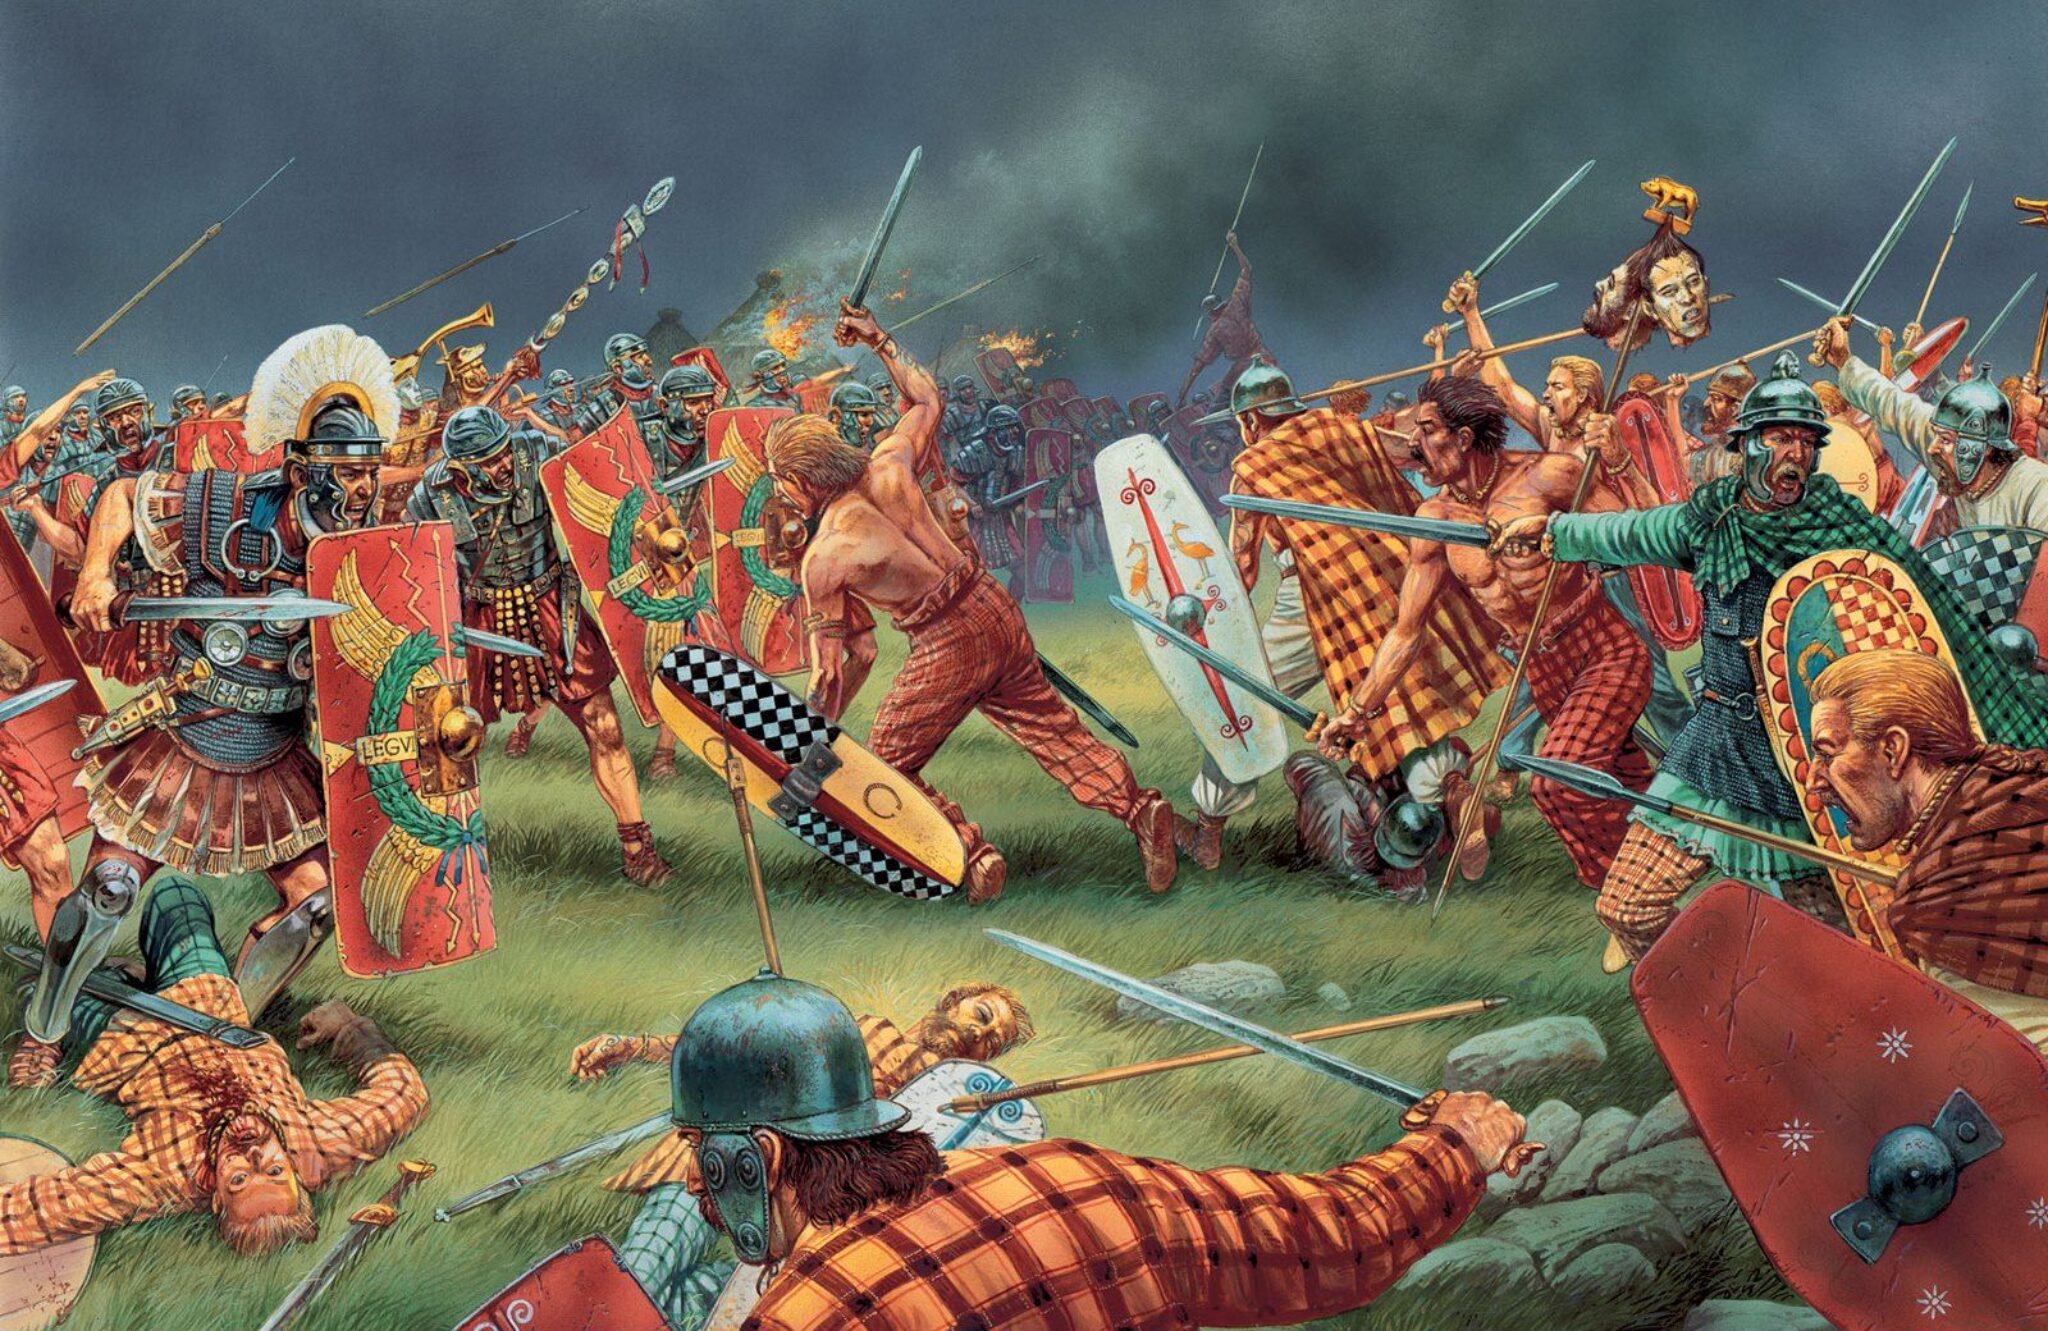 Военные походы римлян. Римское завоевание Британии. Питер Деннис художник кельты галлы. Римляне против кельтов.